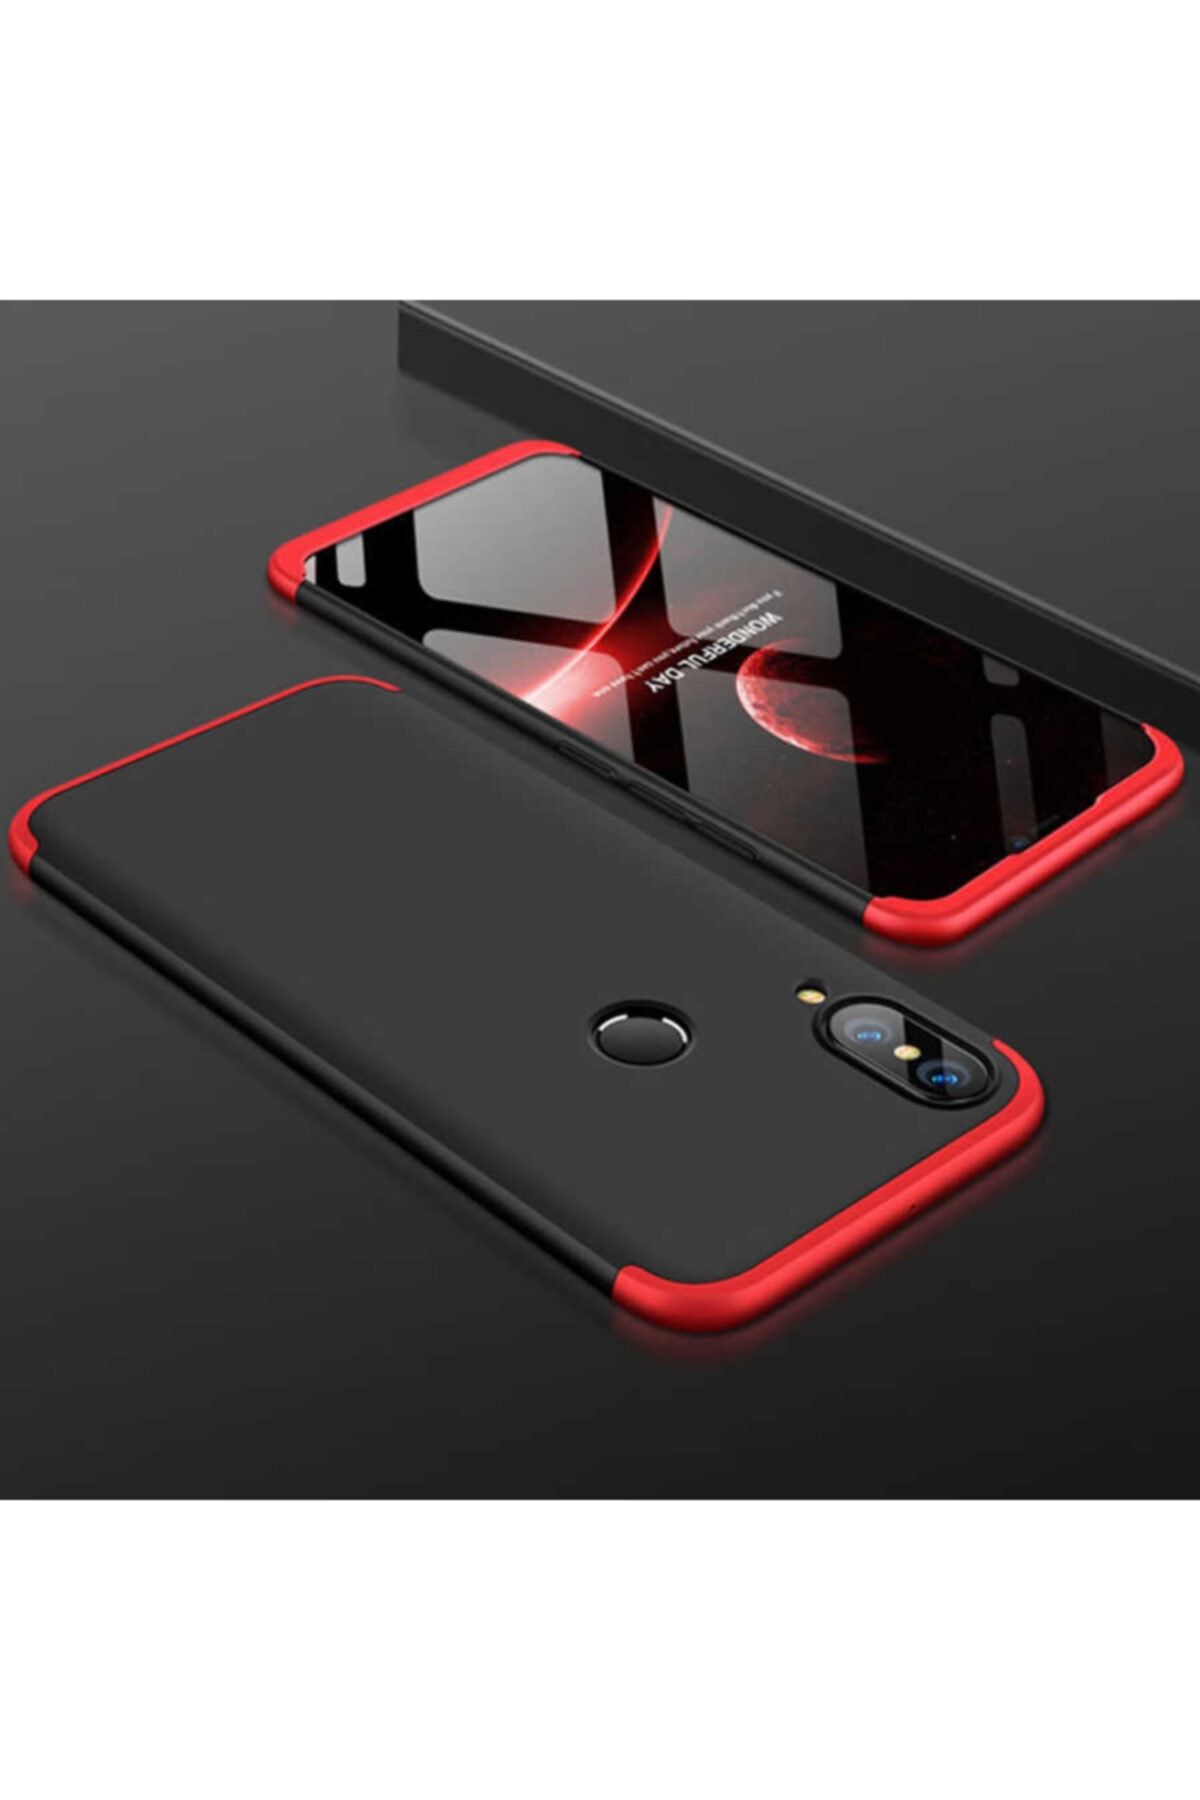 Nezih Case Huawei P20 Lite 360 Tam Koruma 3 Parça Slim Sert Silikon Kılıf Siyah/kırmızı